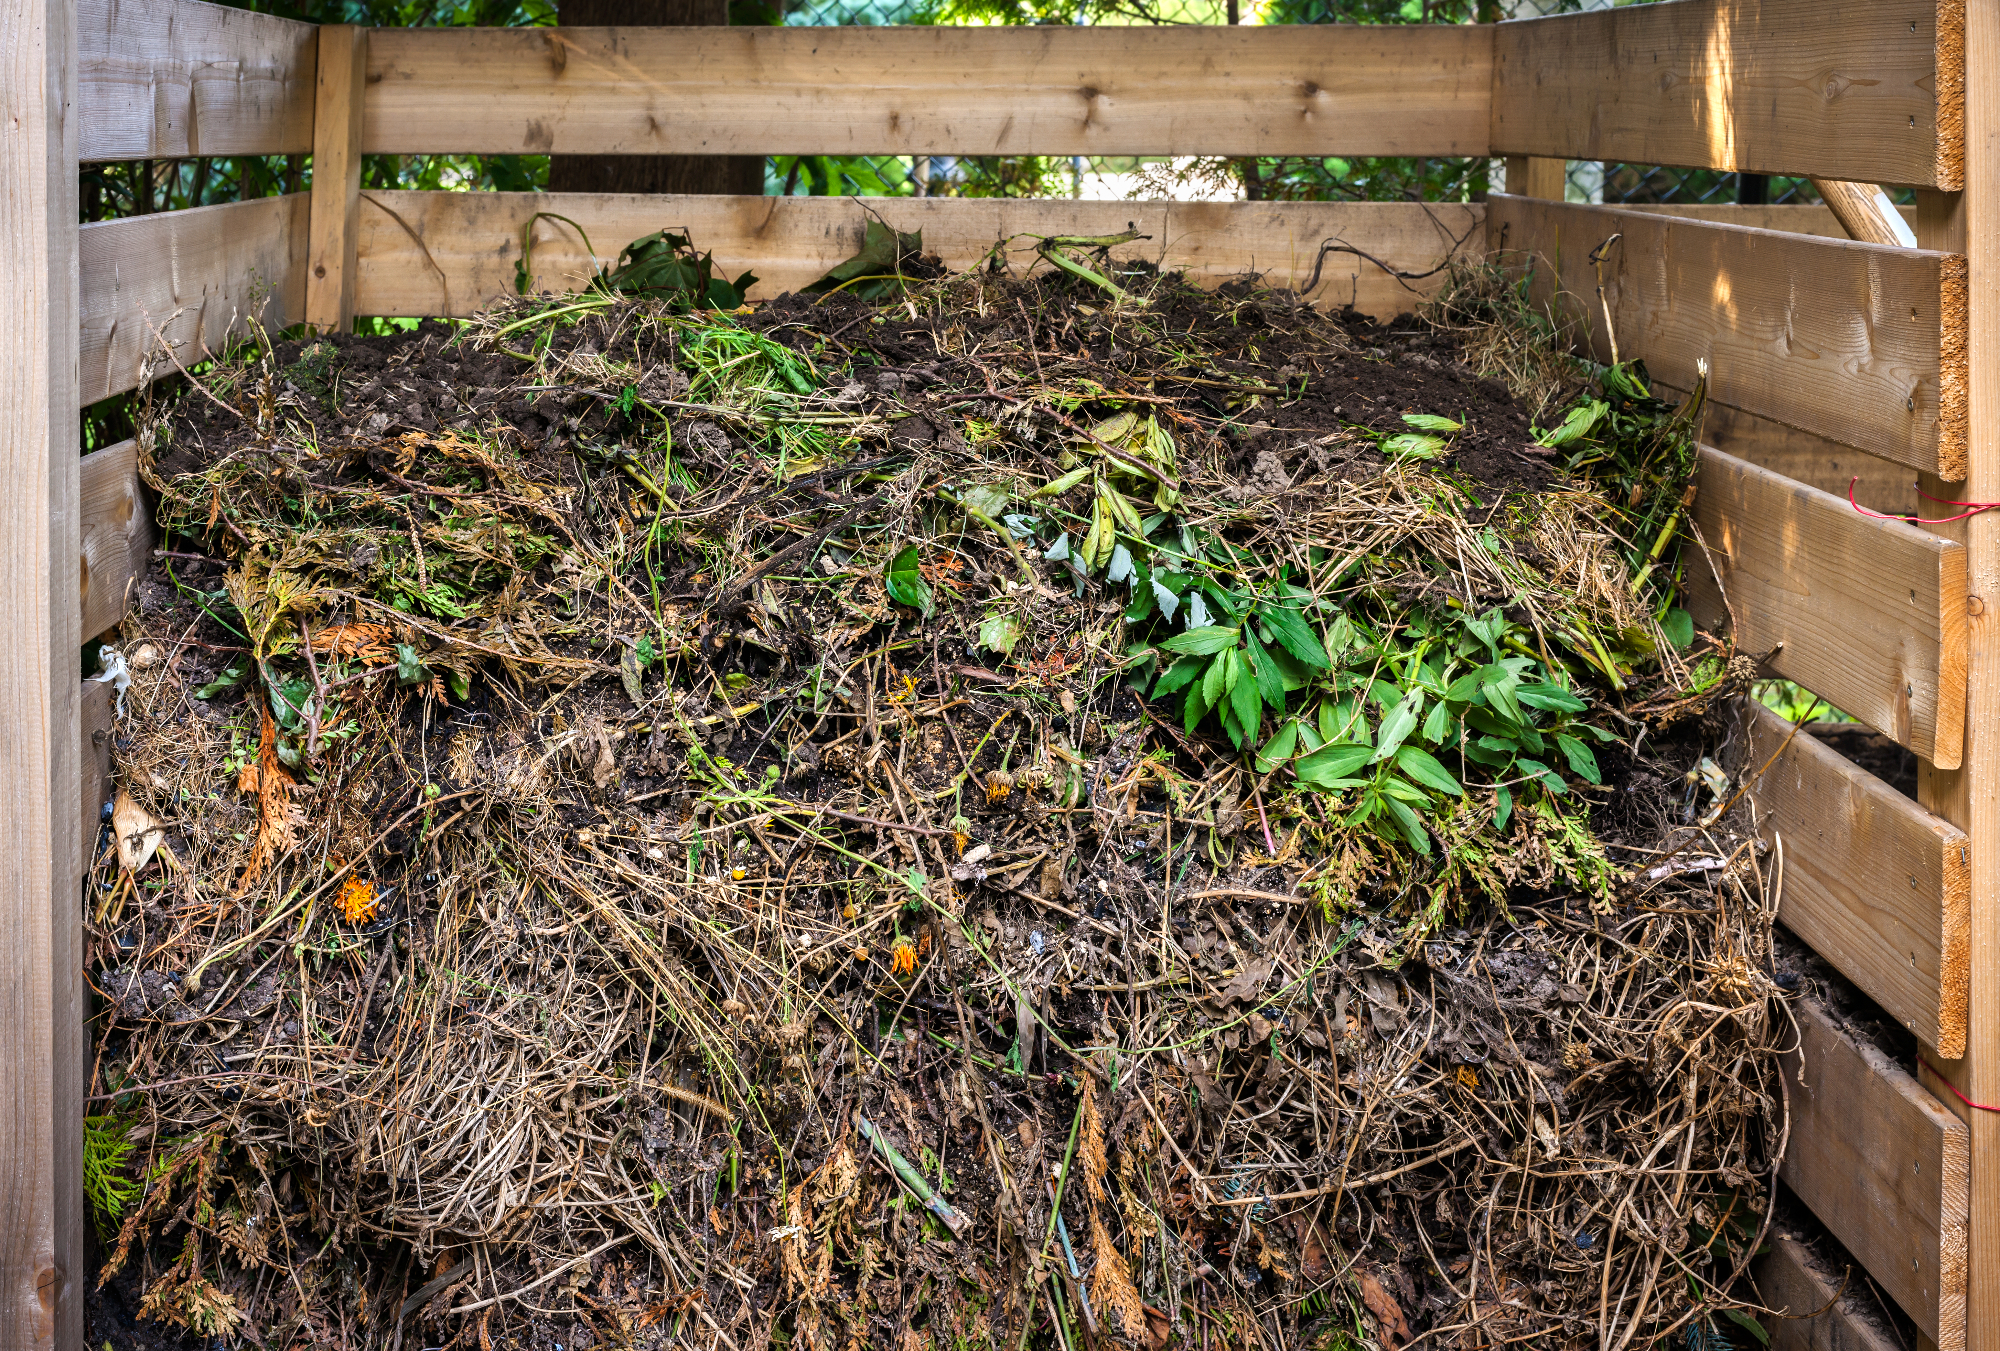 Kompostniki so odličen način za pridelovanje naravnega gnojila